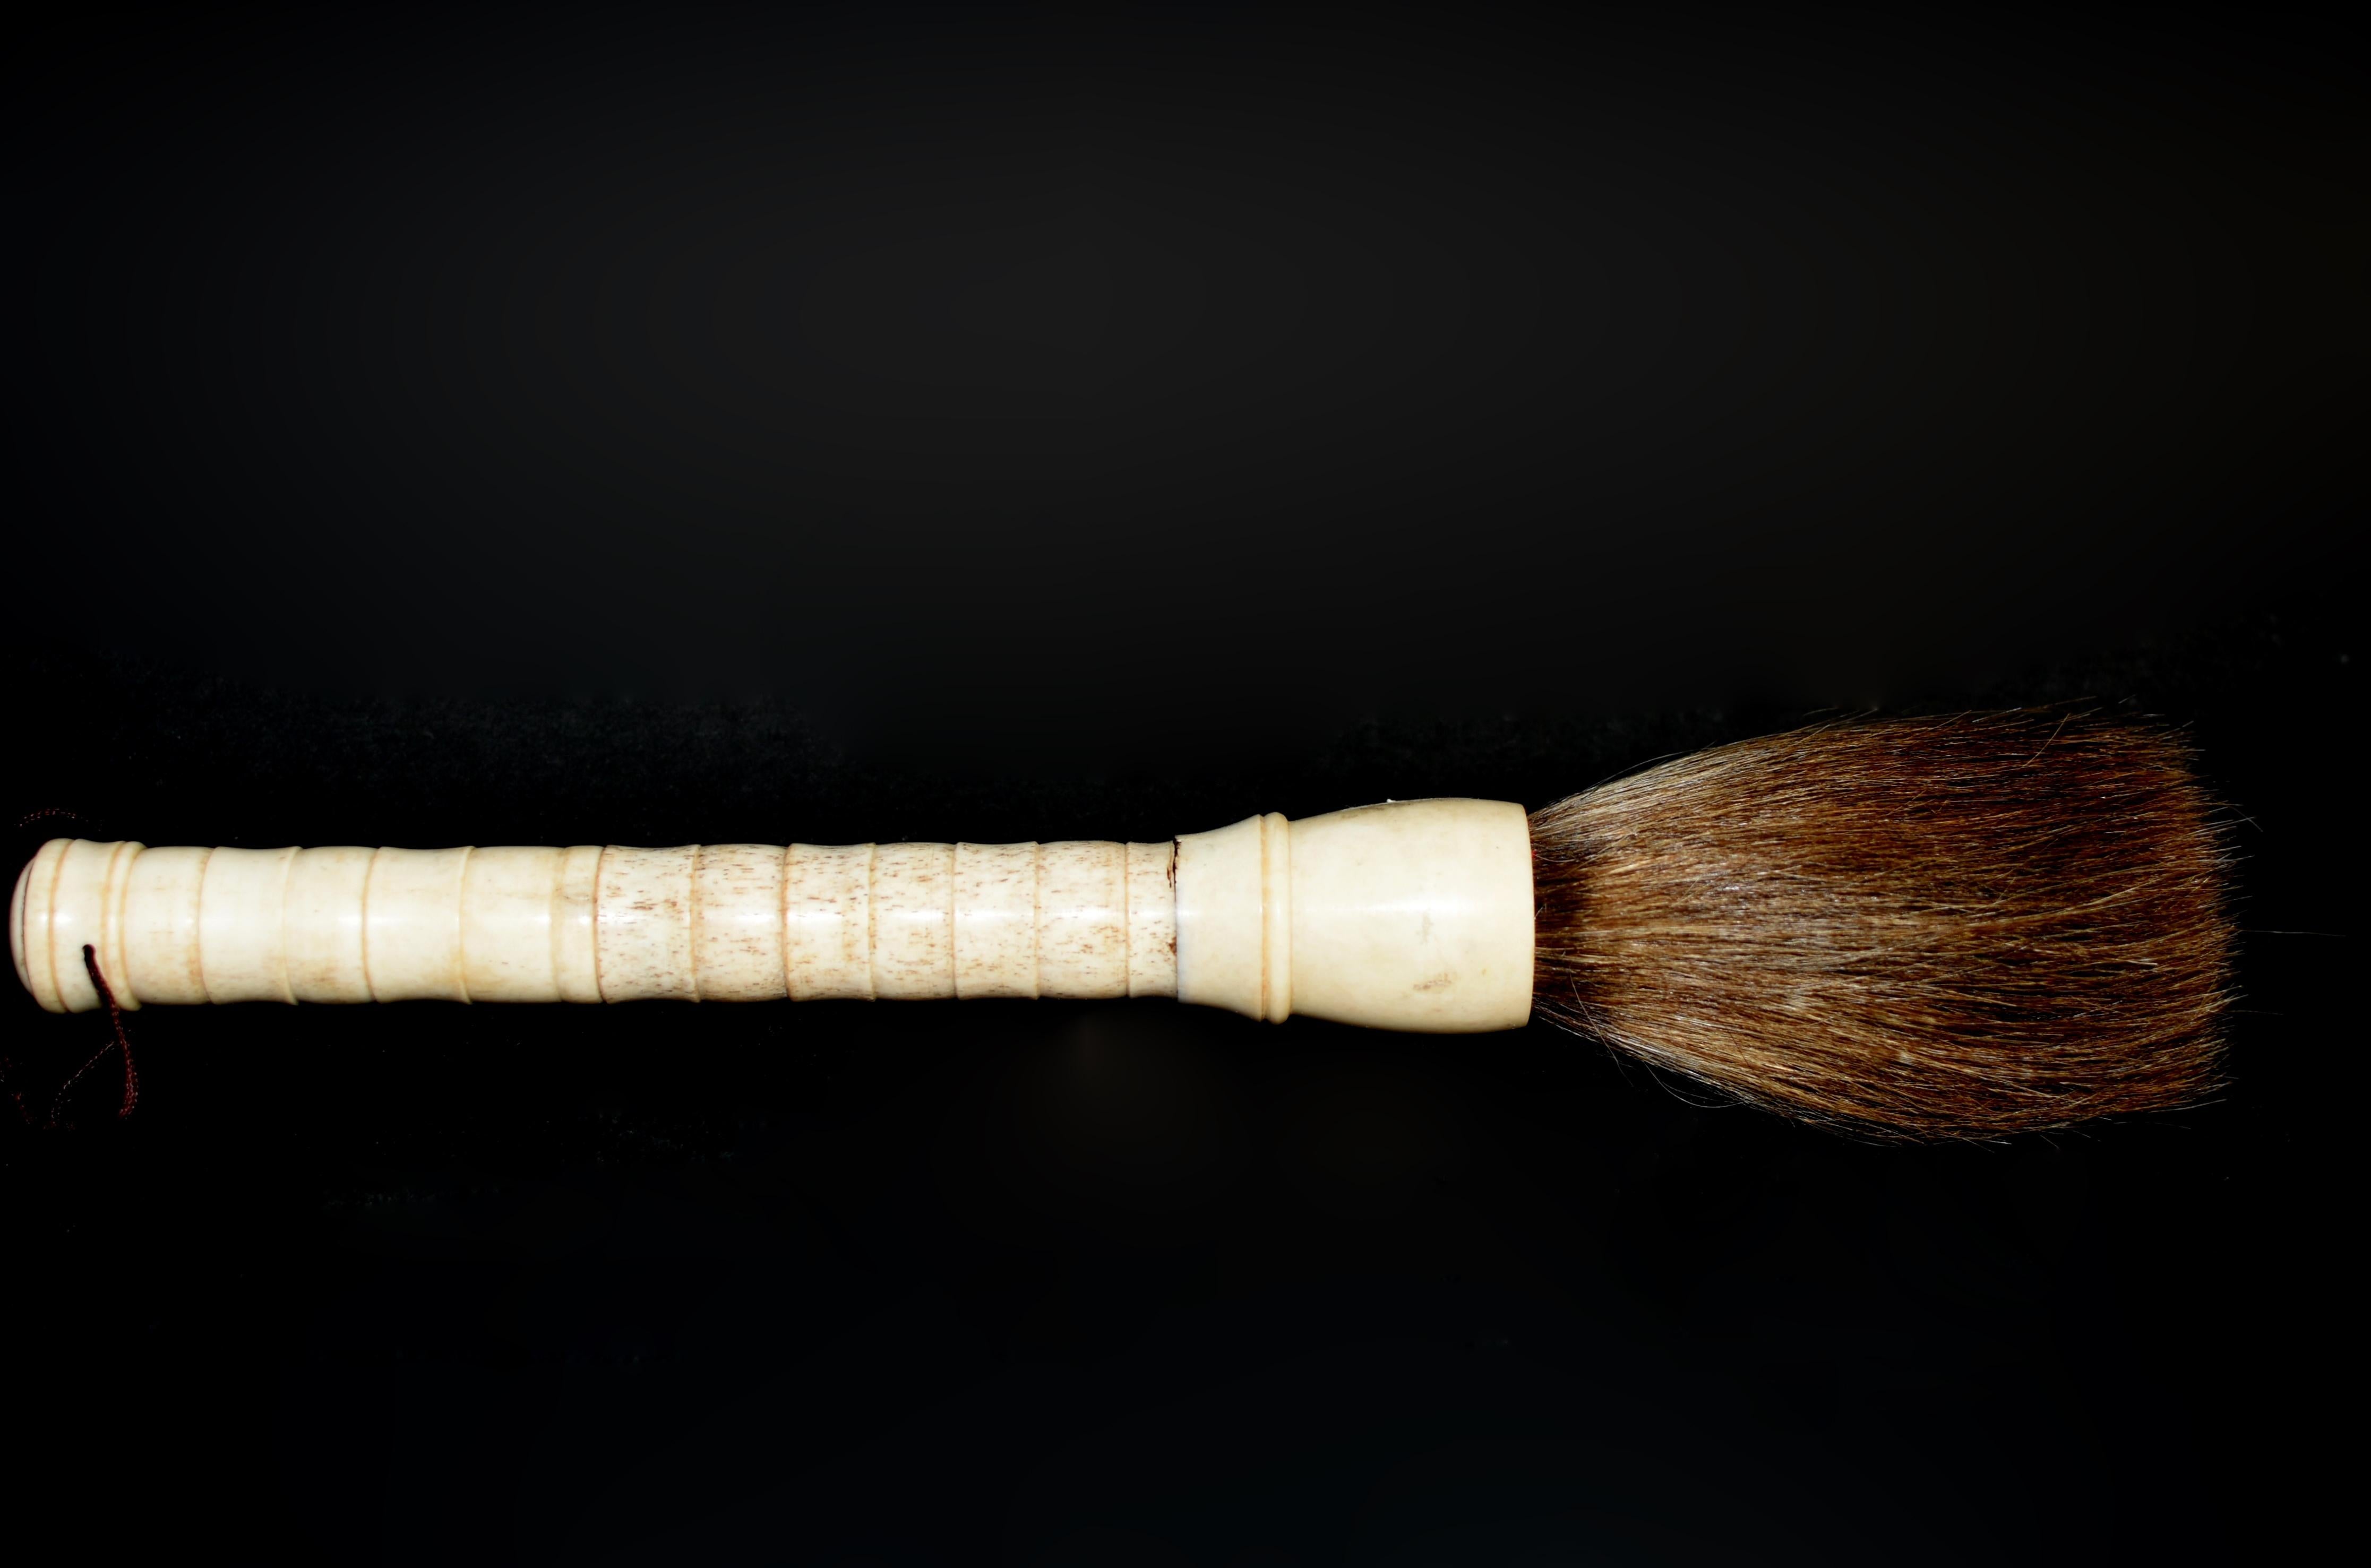 Un beau pinceau de calligraphie chinois avec un manche en os fait à la main. Cette brosse date du 20e siècle mais n'a pas été utilisée. Il est parfait pour faire de l'art, de la calligraphie ou comme élément de design. Virole en os et crin de cheval.